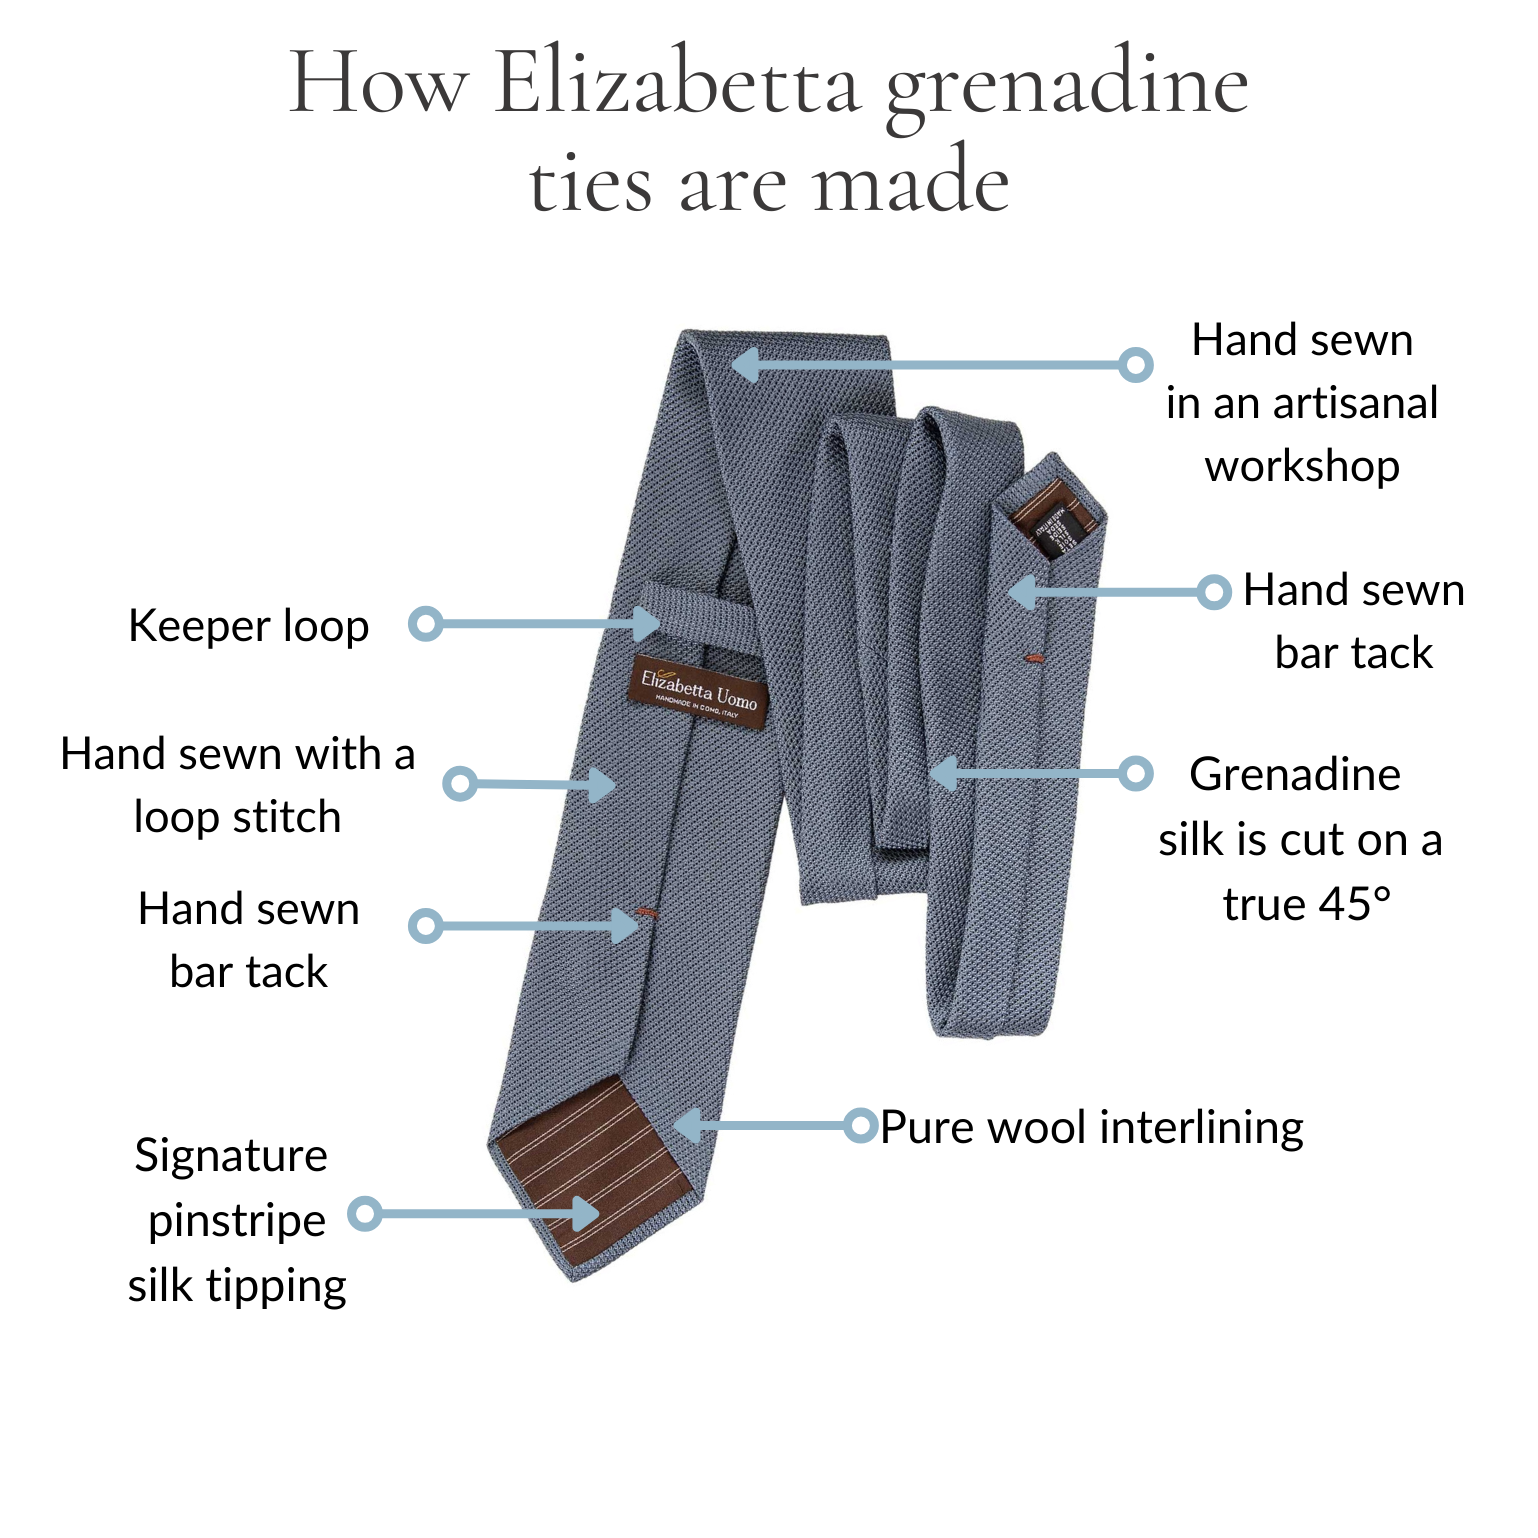 how an Elizabetta Grenadine tie is made